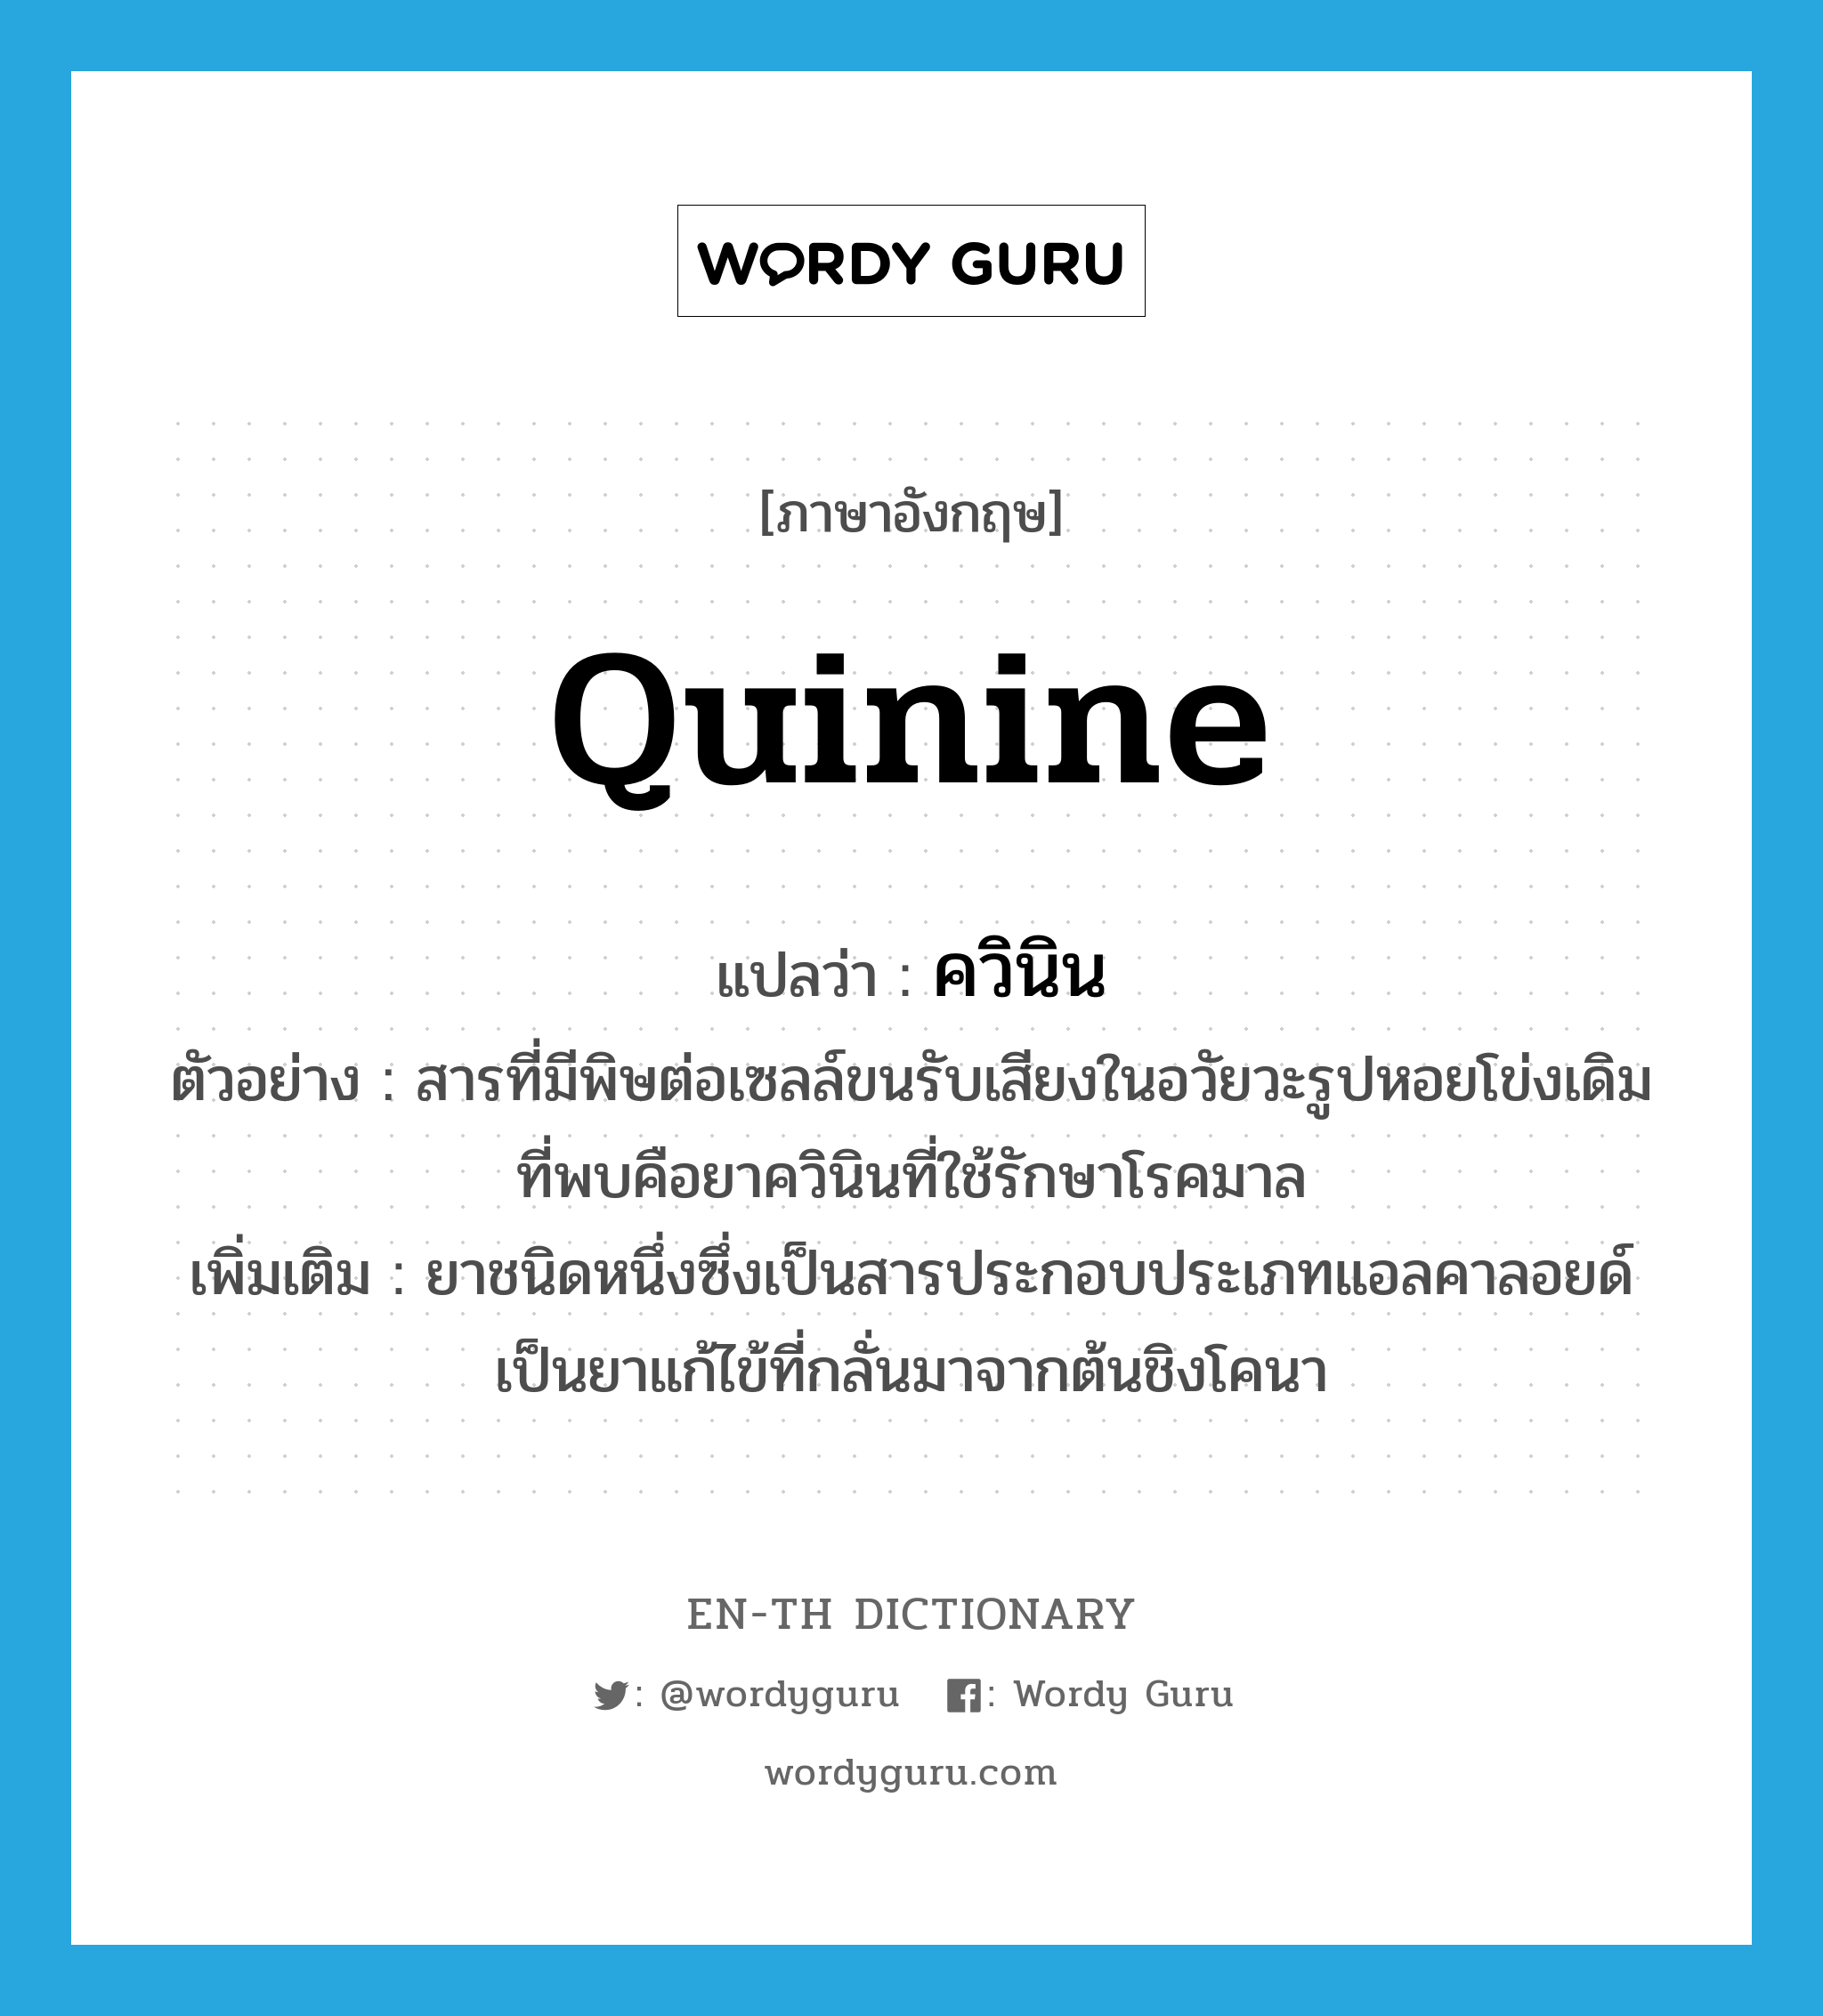 quinine แปลว่า?, คำศัพท์ภาษาอังกฤษ quinine แปลว่า ควินิน ประเภท N ตัวอย่าง สารที่มีพิษต่อเซลล์ขนรับเสียงในอวัยวะรูปหอยโข่งเดิมที่พบคือยาควินินที่ใช้รักษาโรคมาล เพิ่มเติม ยาชนิดหนึ่งซึ่งเป็นสารประกอบประเภทแอลคาลอยด์ เป็นยาแก้ไข้ที่กลั่นมาจากต้นชิงโคนา หมวด N